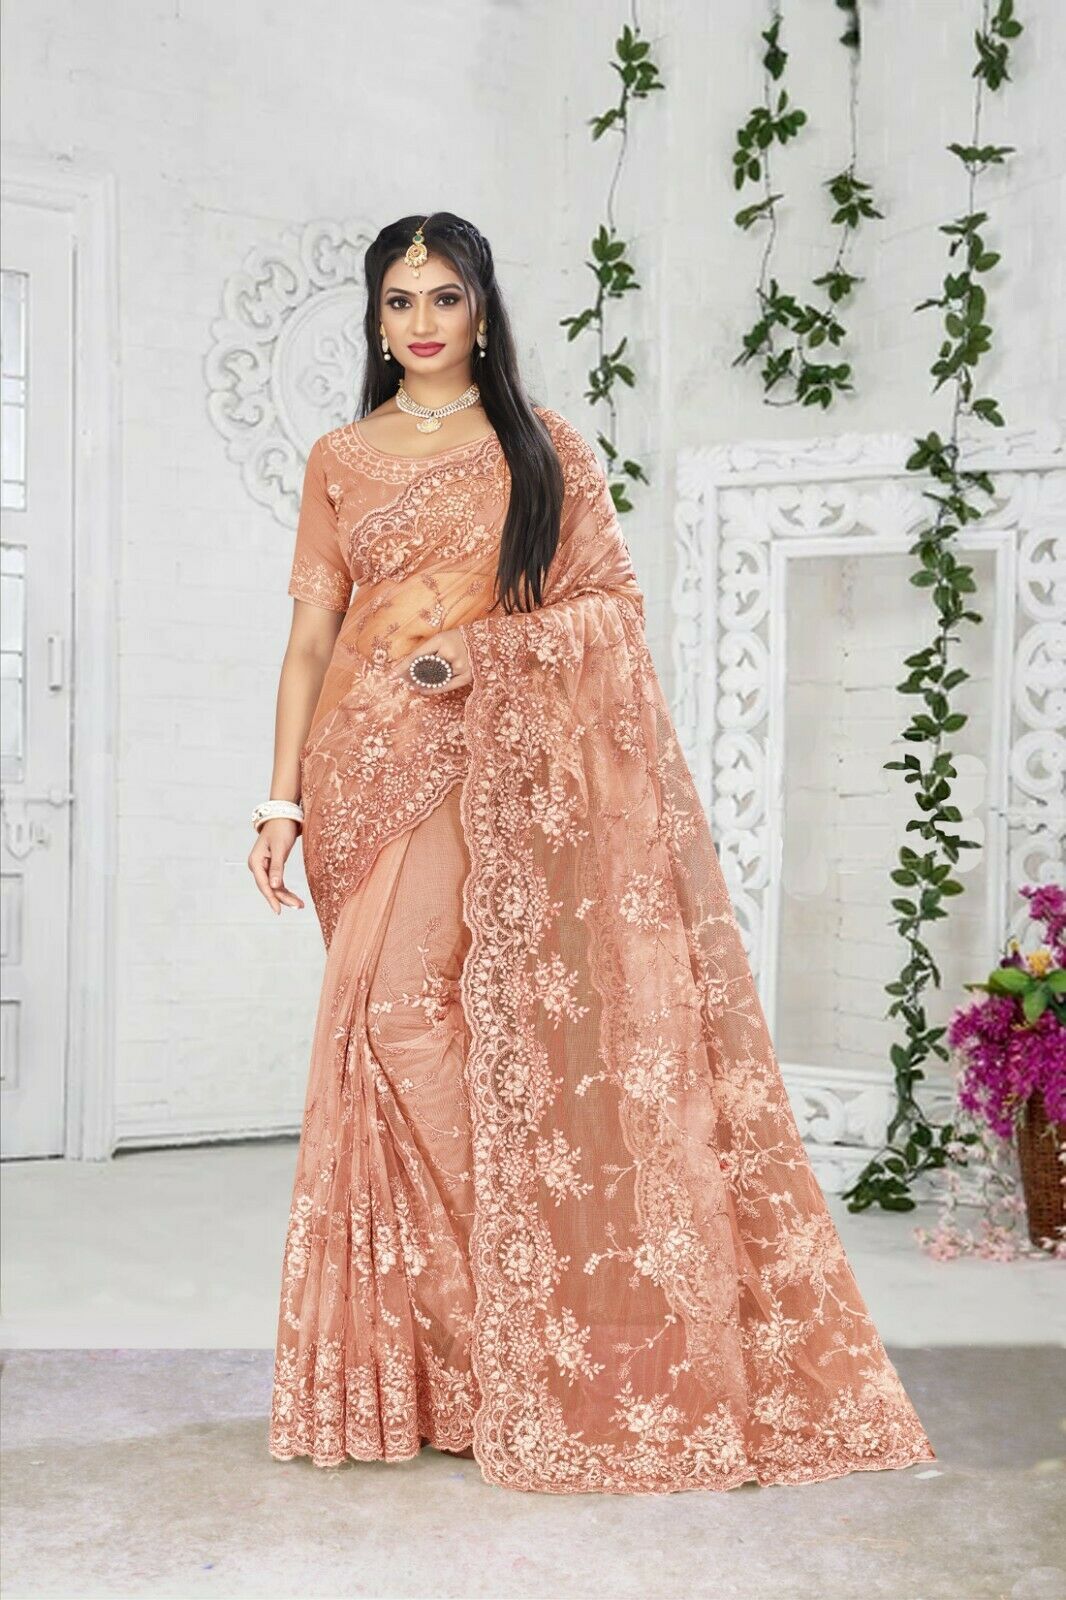 Designer Peach Heavy Resham Embroidery Work Ethnic Sari Net Wedding Wear Saree